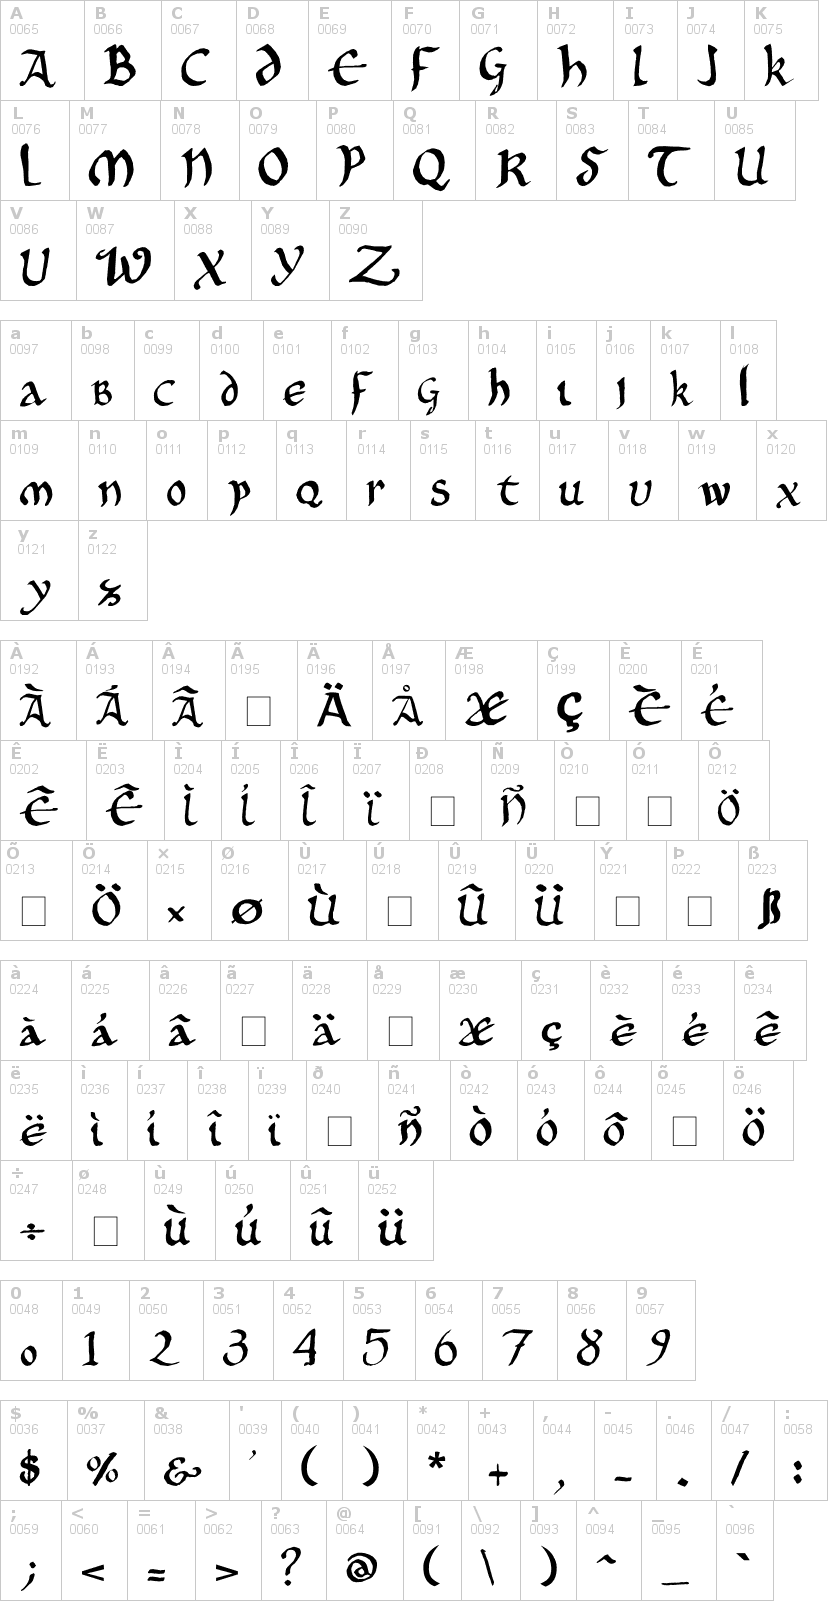 Lettere dell'alfabeto del font onciale-phf con le quali è possibile realizzare adesivi prespaziati